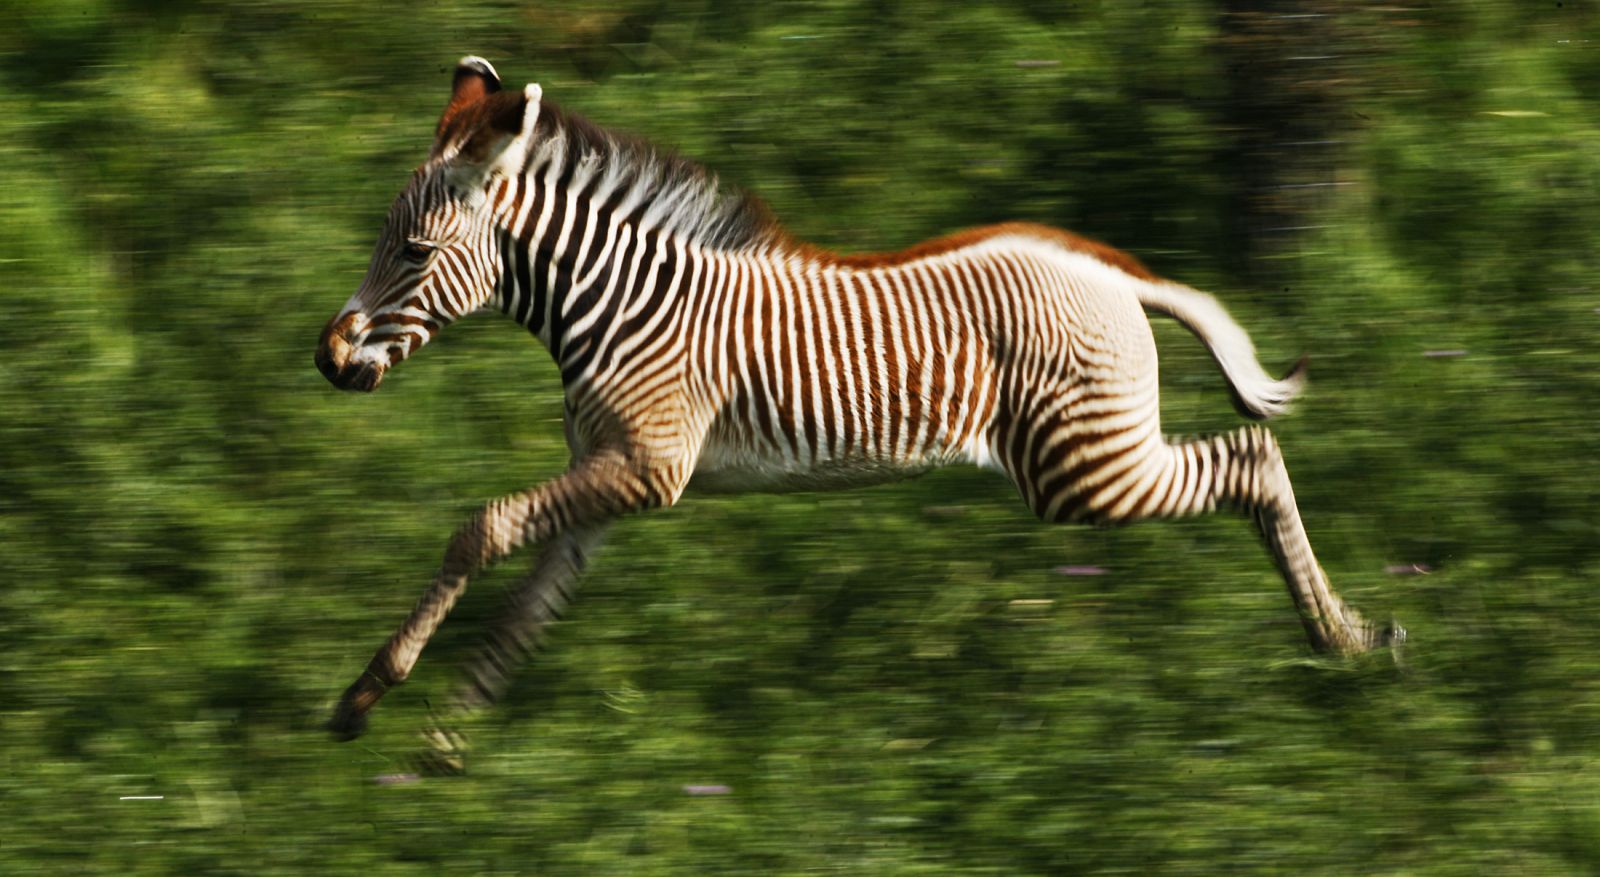 Una joven cebra corriendo en un parque nacional